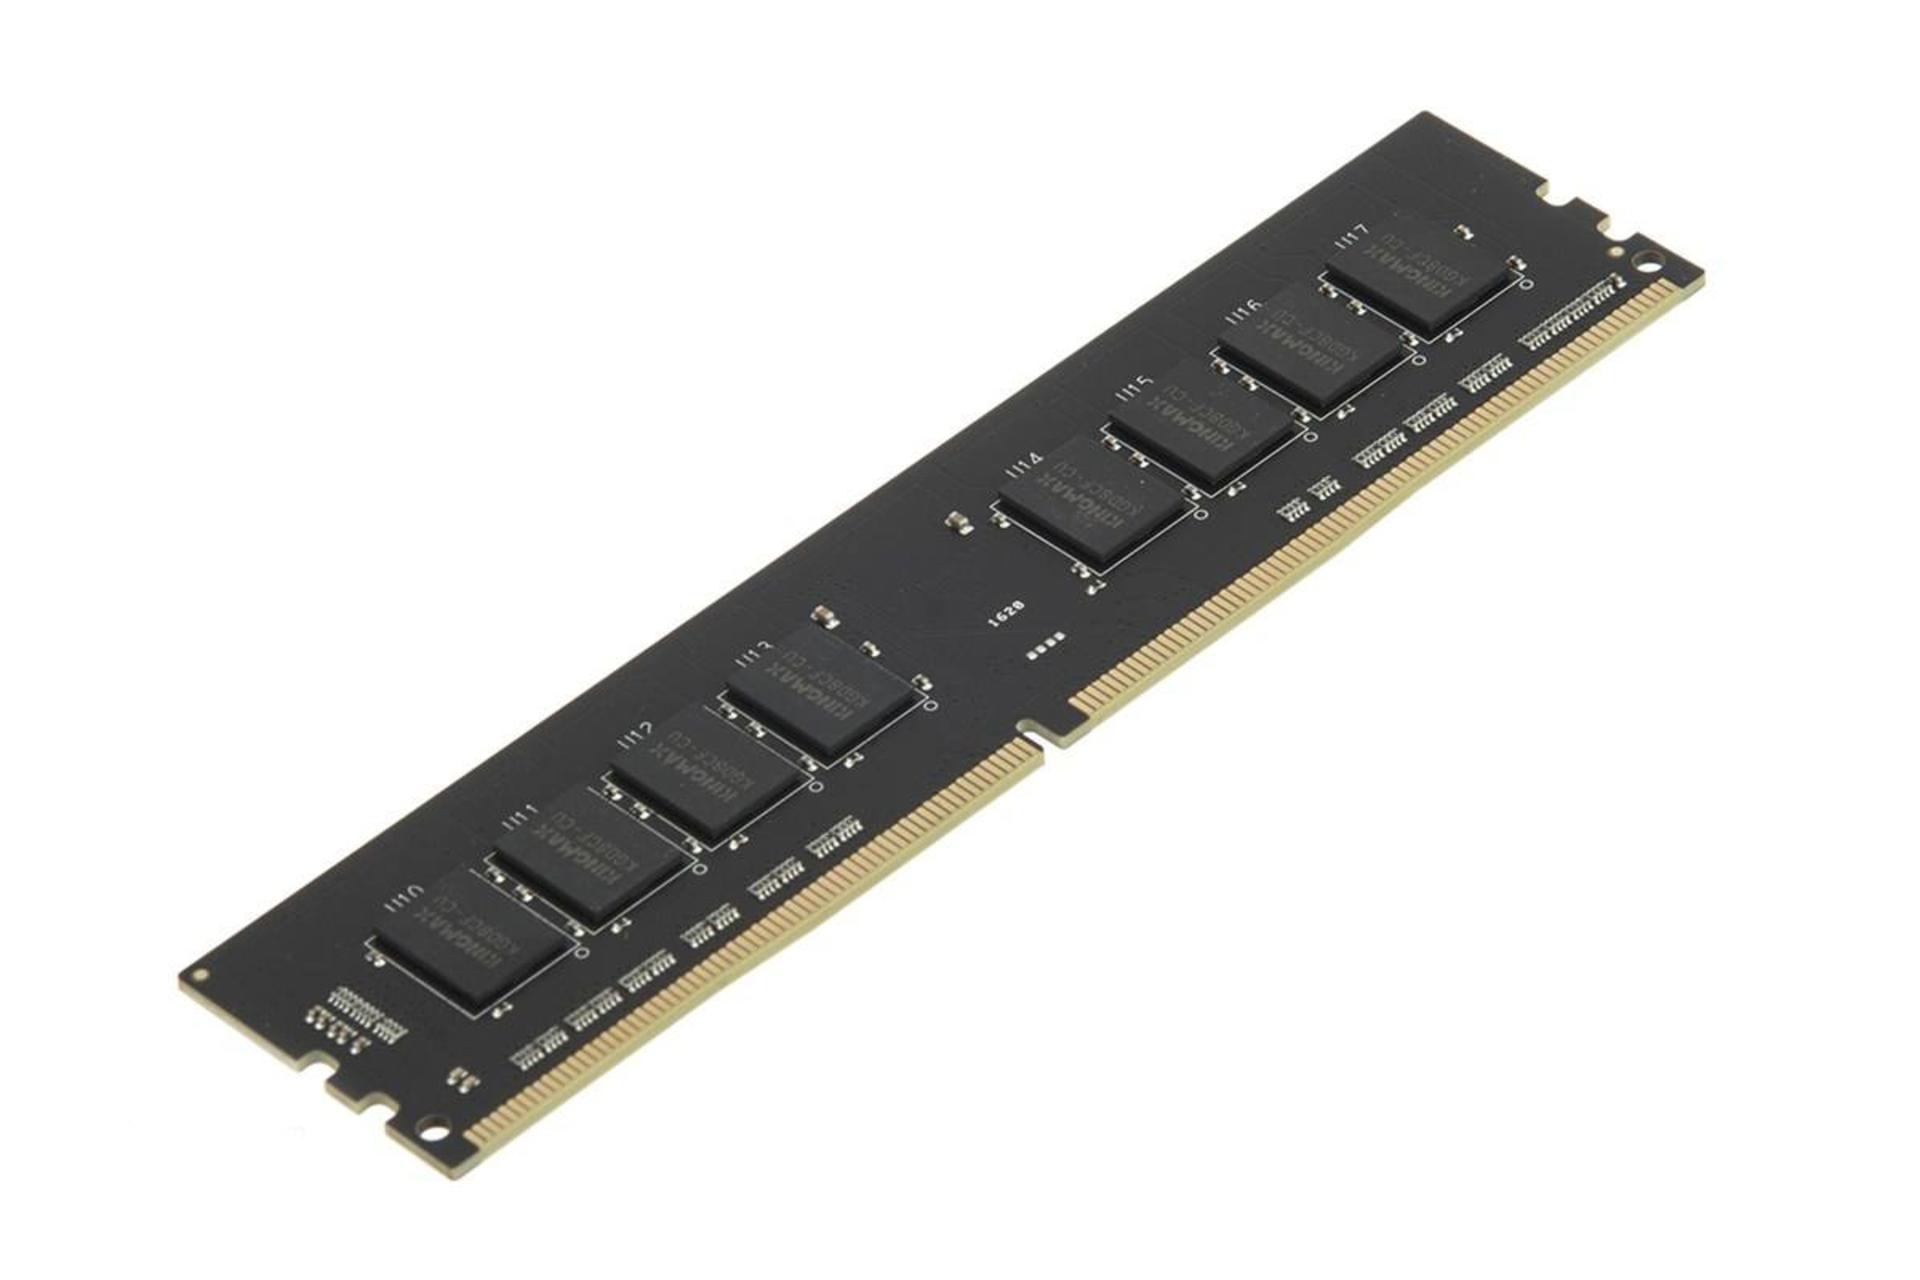 نمای کنار رم کینگ مکس دسکتاپ ظرفیت 4 گیگابایت از نوع DDR4-2400